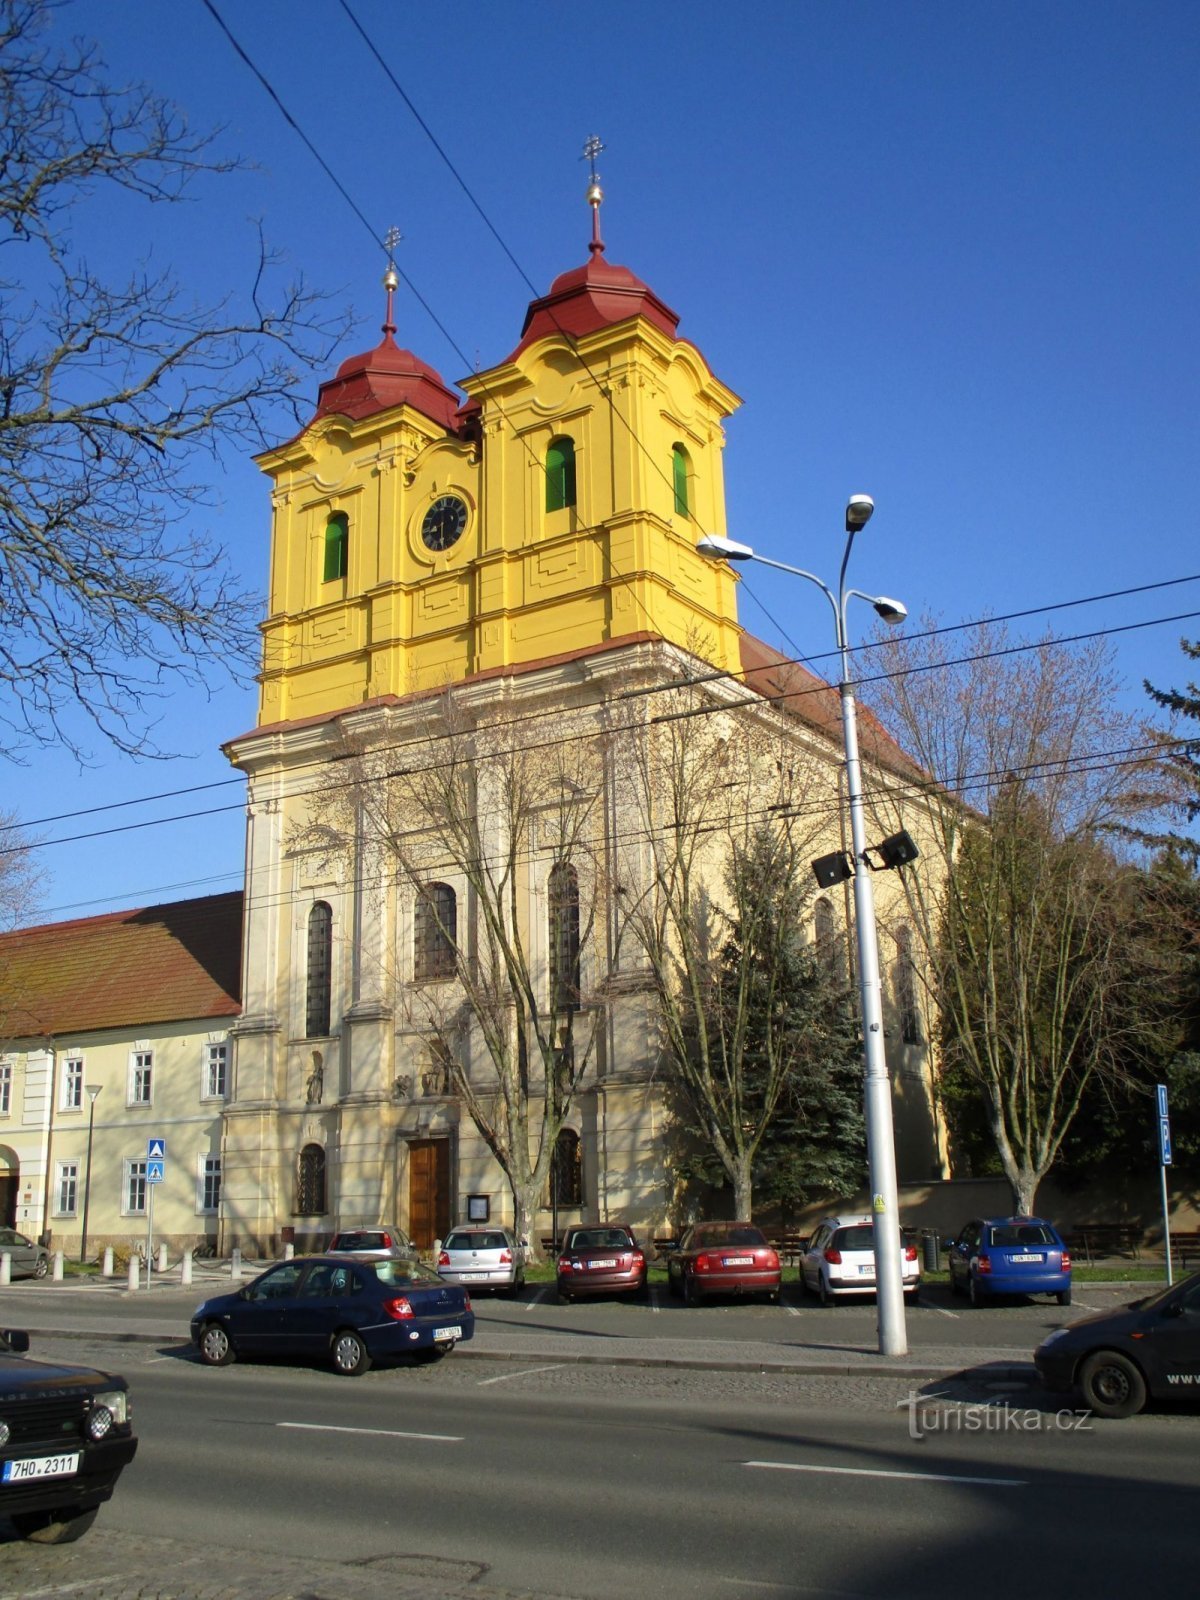 Kirche St. Anny (Hradec Králové, 5.4.2020. April XNUMX)